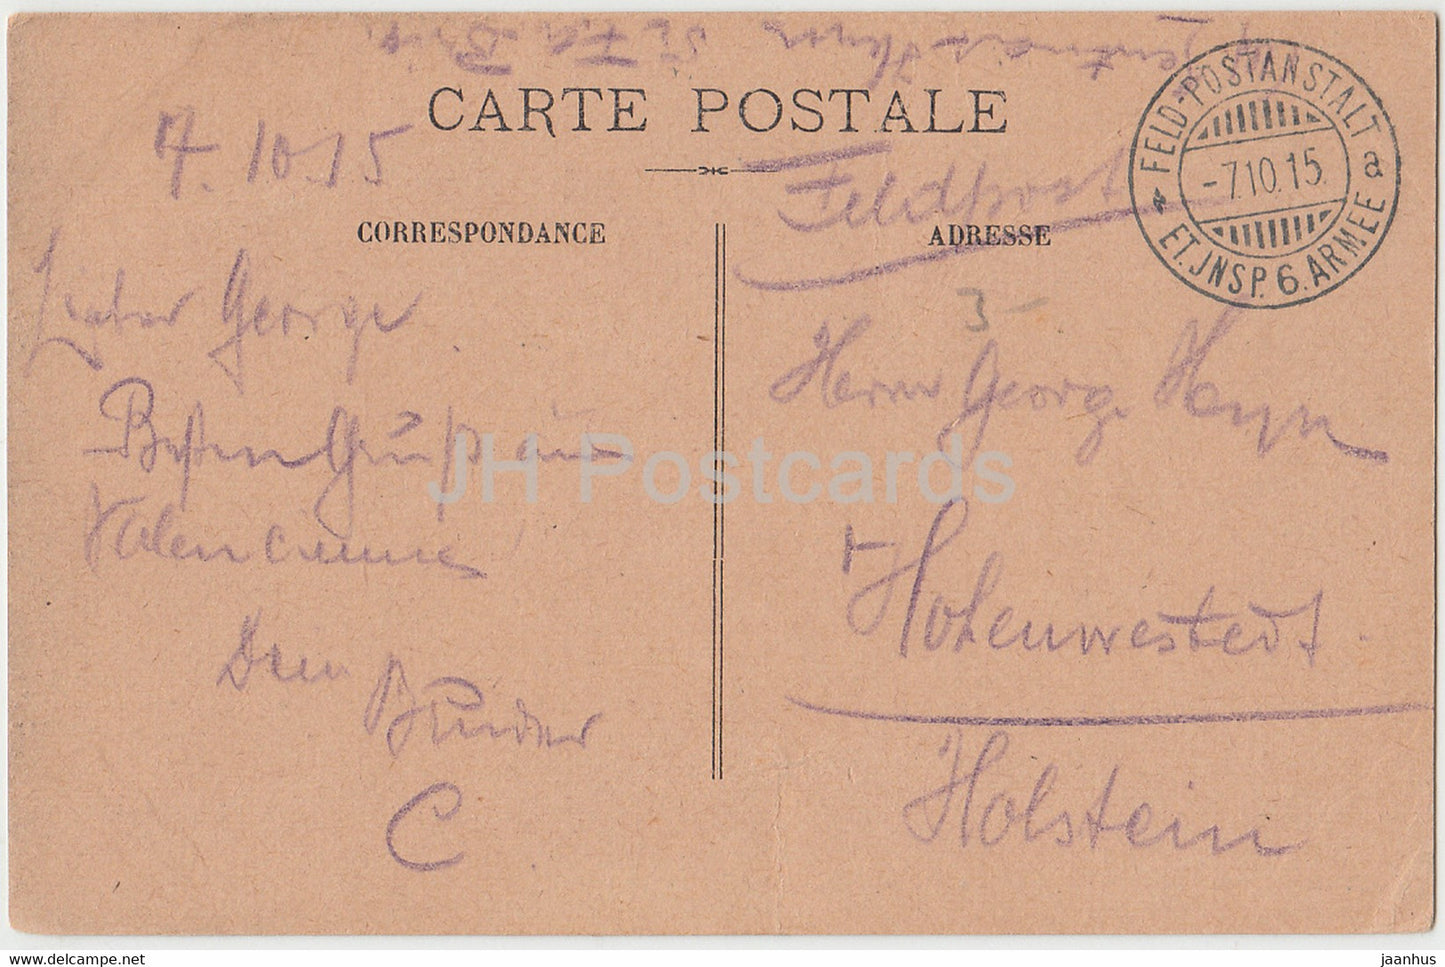 Valenciennes - Eglise Notre Dame - église - 6 Armee - Feldpost - carte postale ancienne - 1915 - France - utilisé